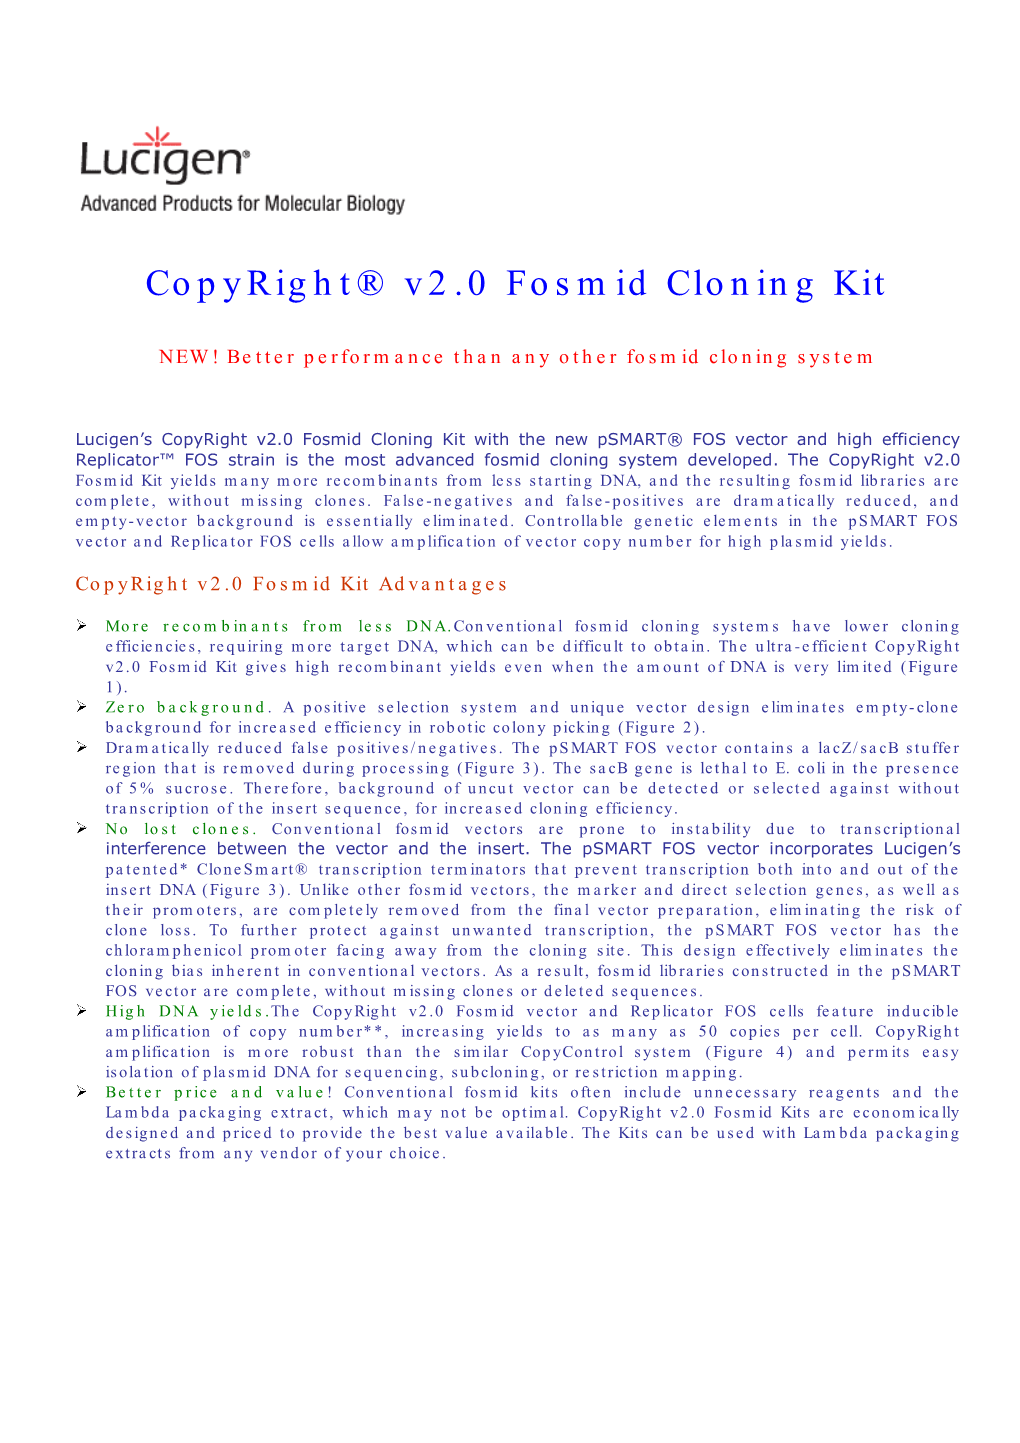 Copyright® V2.0 Fosmid Cloning Kit